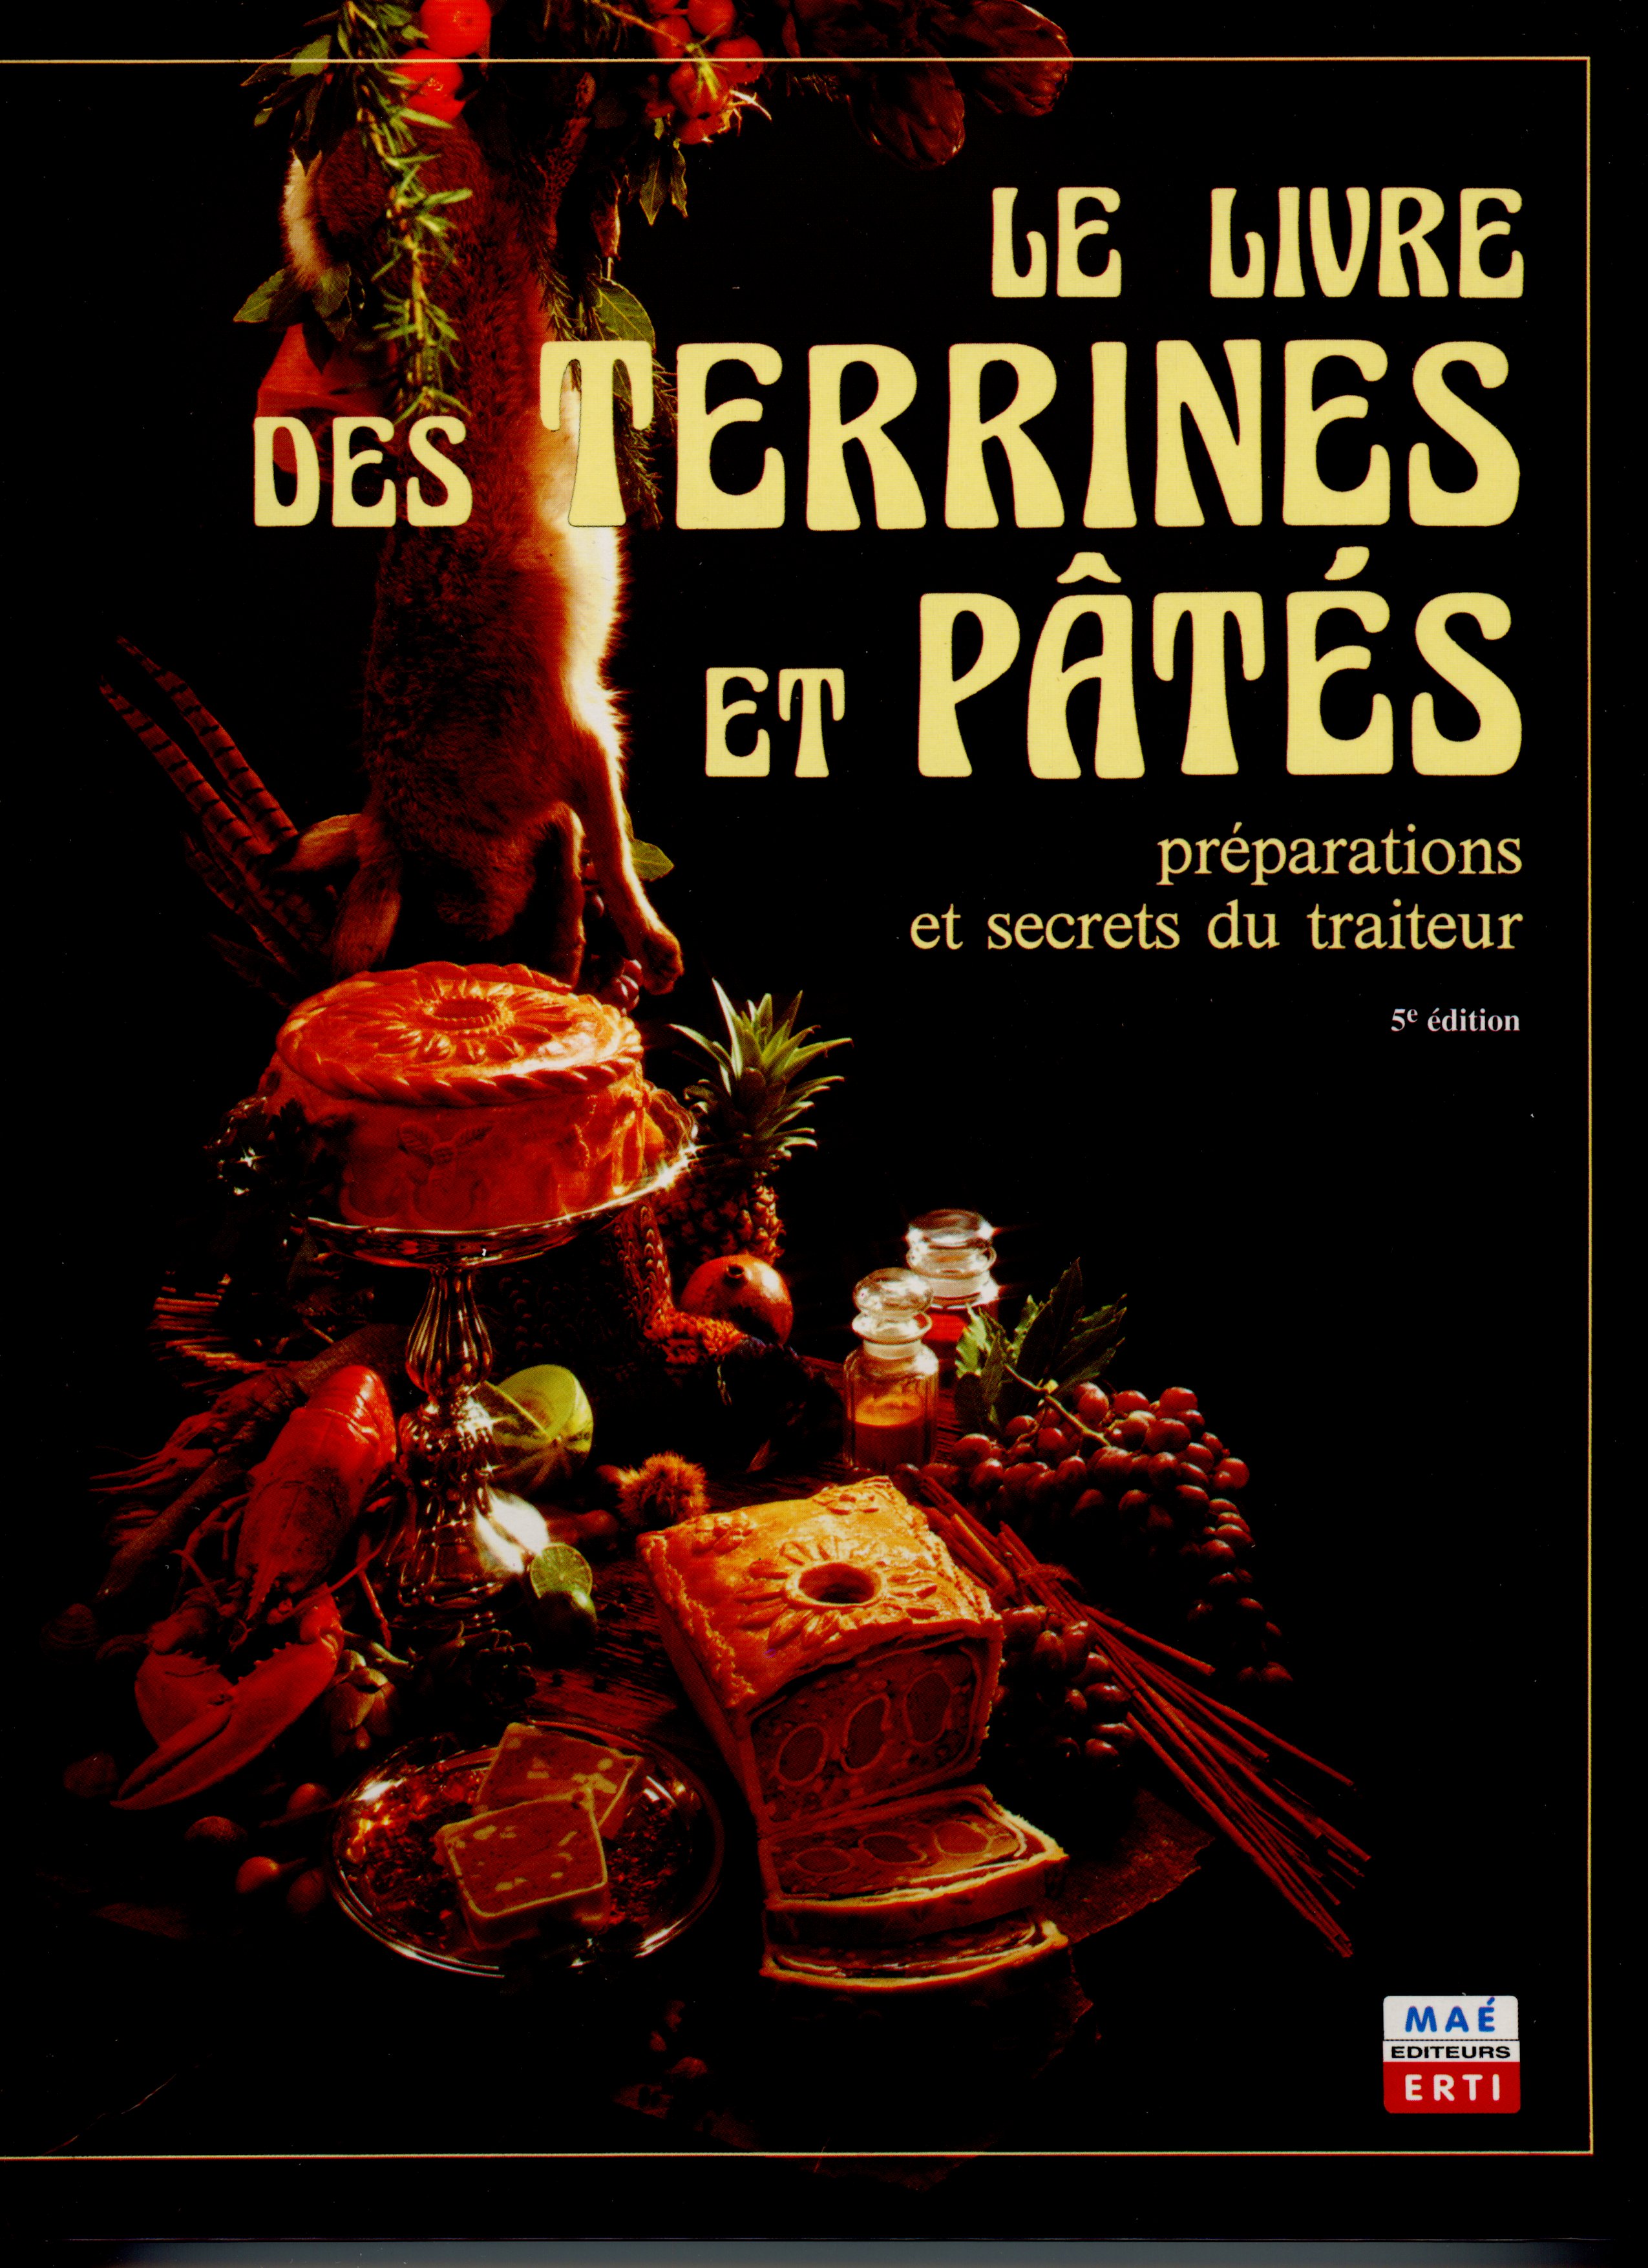 Farces, terrines and pâtés